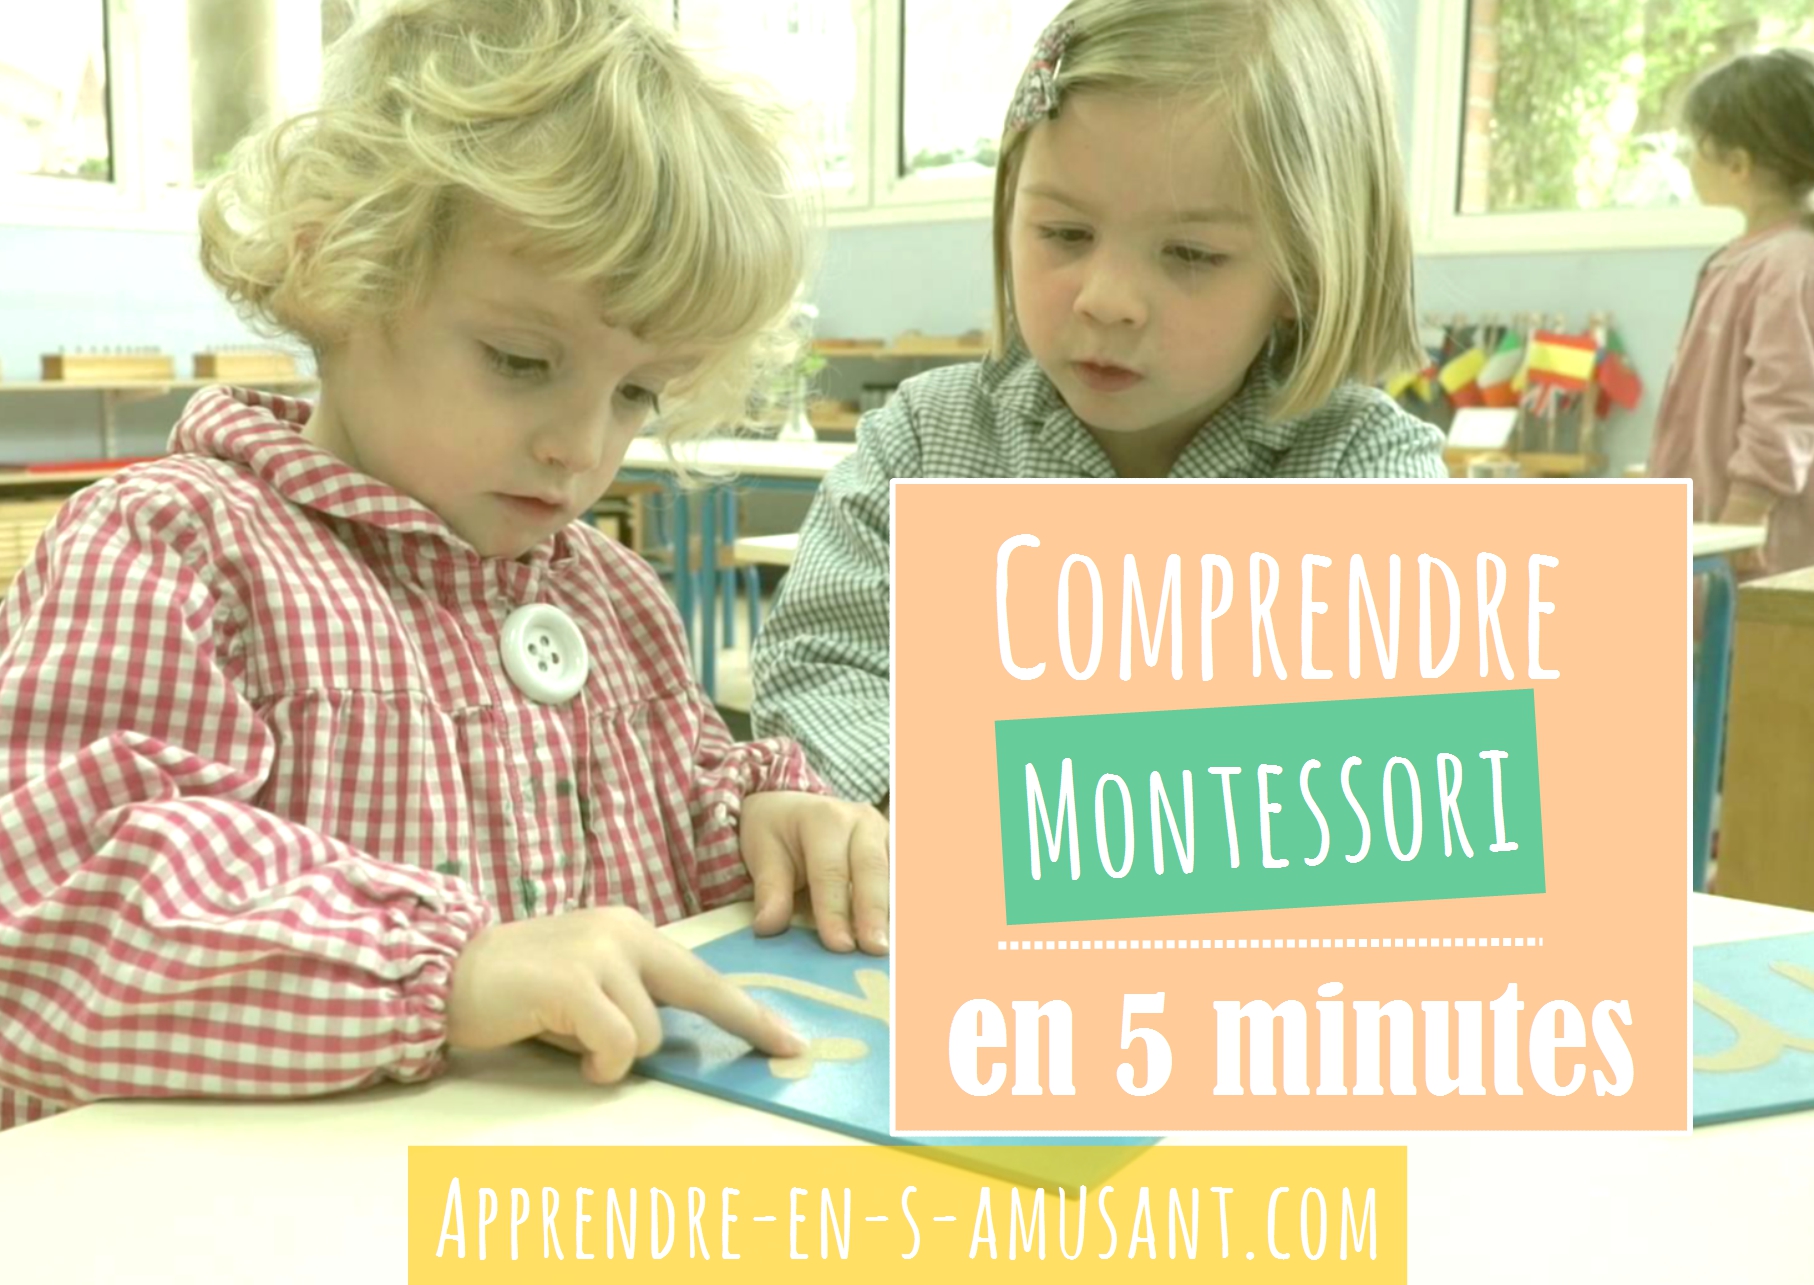 Couverture Montessori 5 minutes